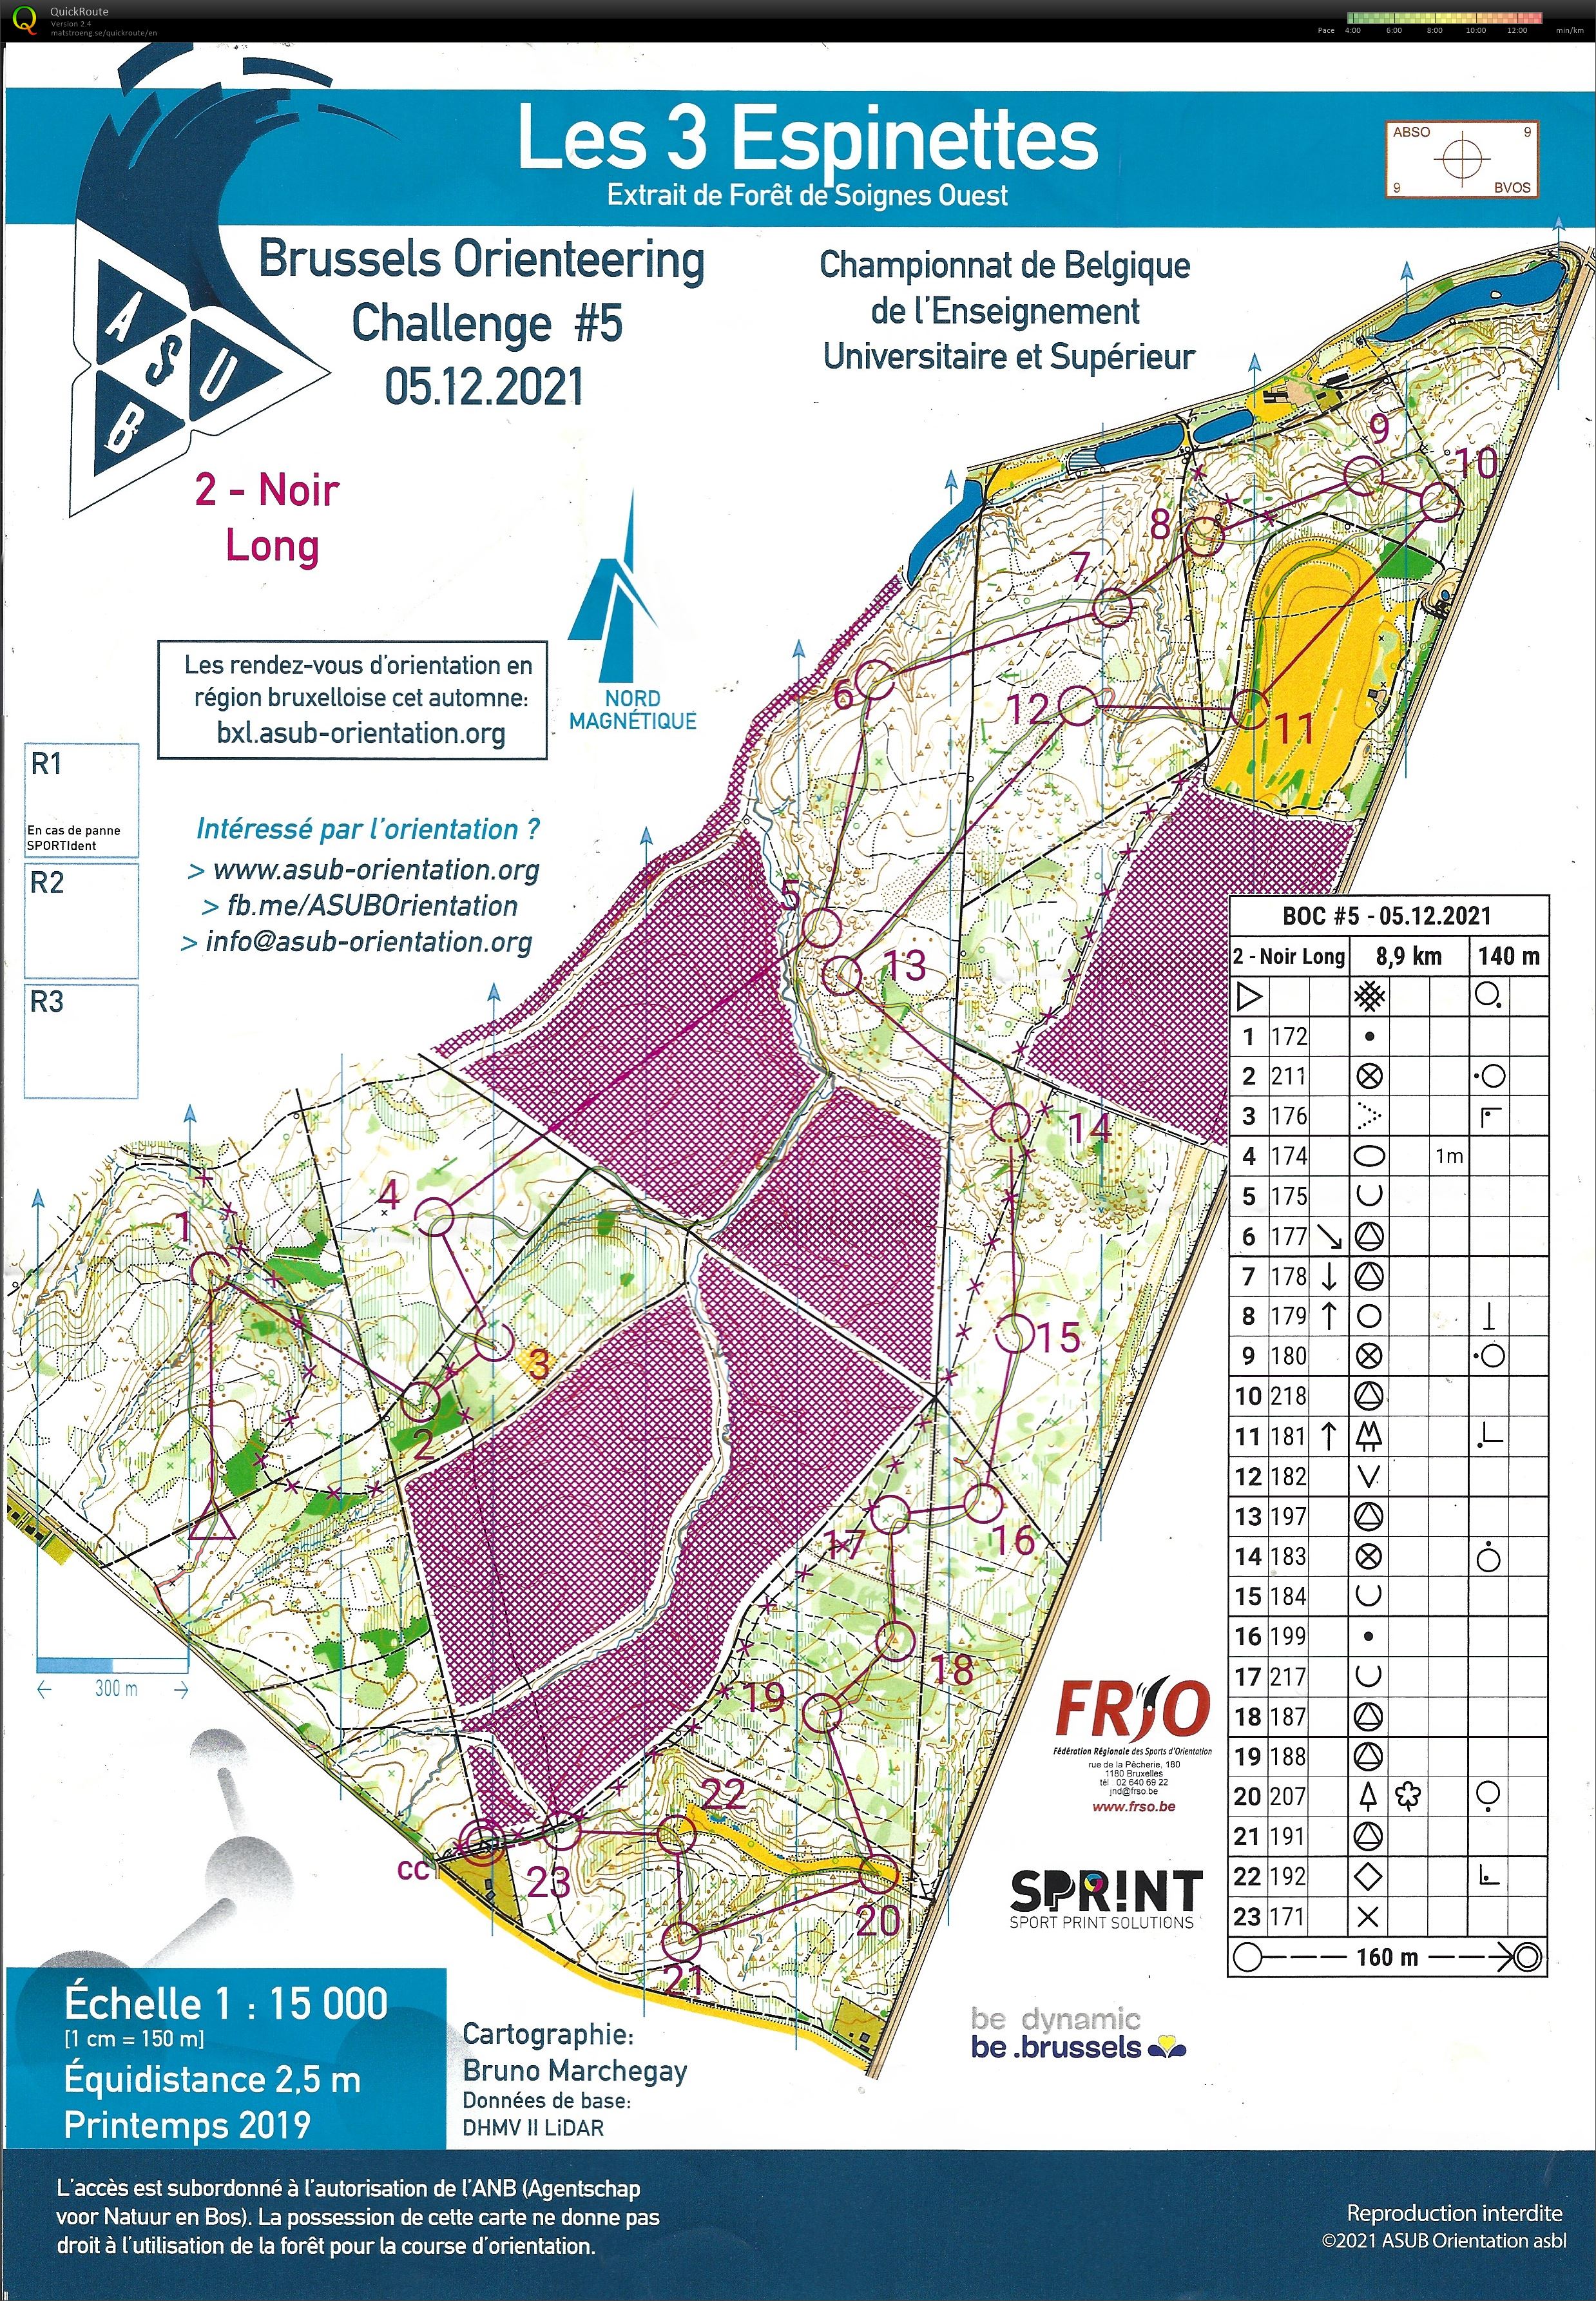 Brussels Orienteering Challenge 5 - Noir Long (05-12-2021) (08/12/2021)